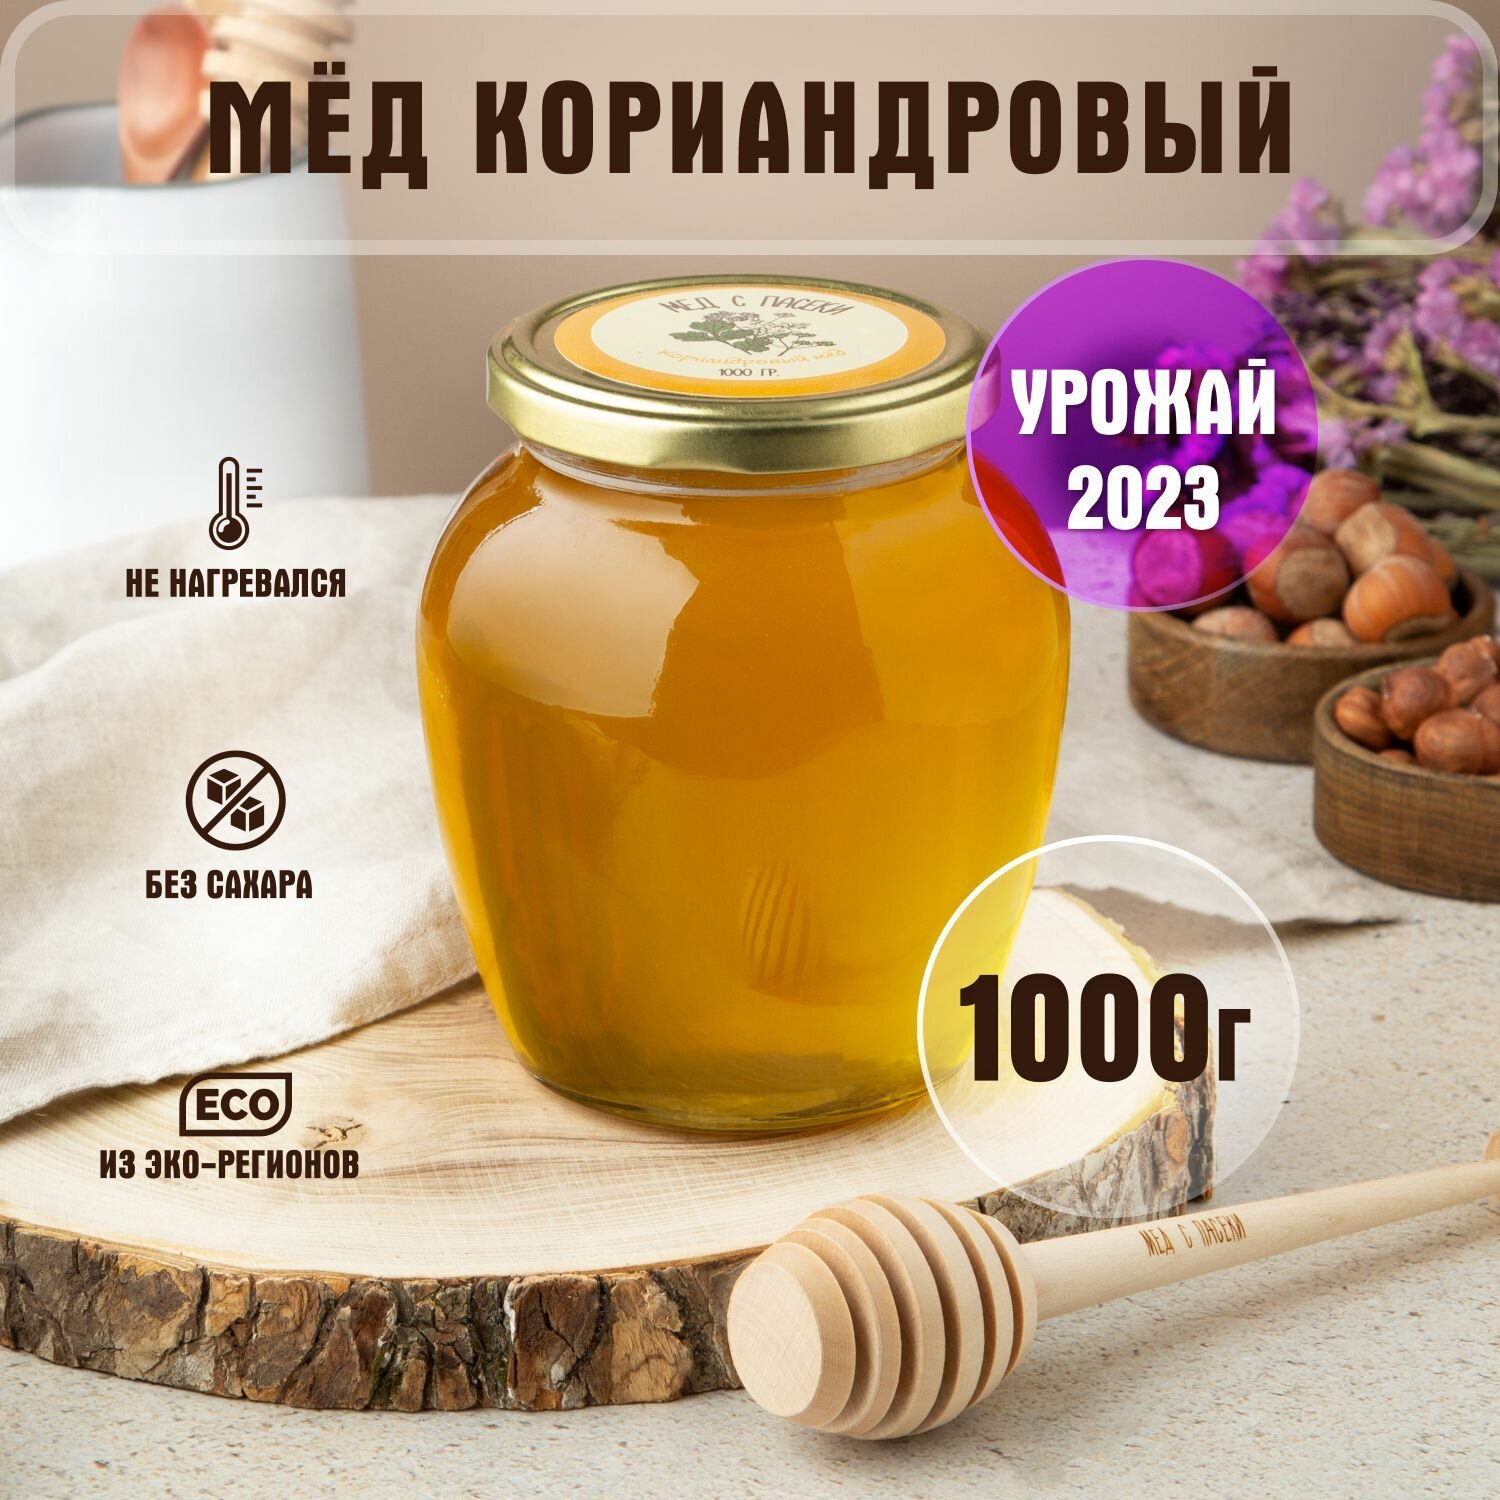 Мед натуральный Кориандровый 1 кг, в стеклянной банке